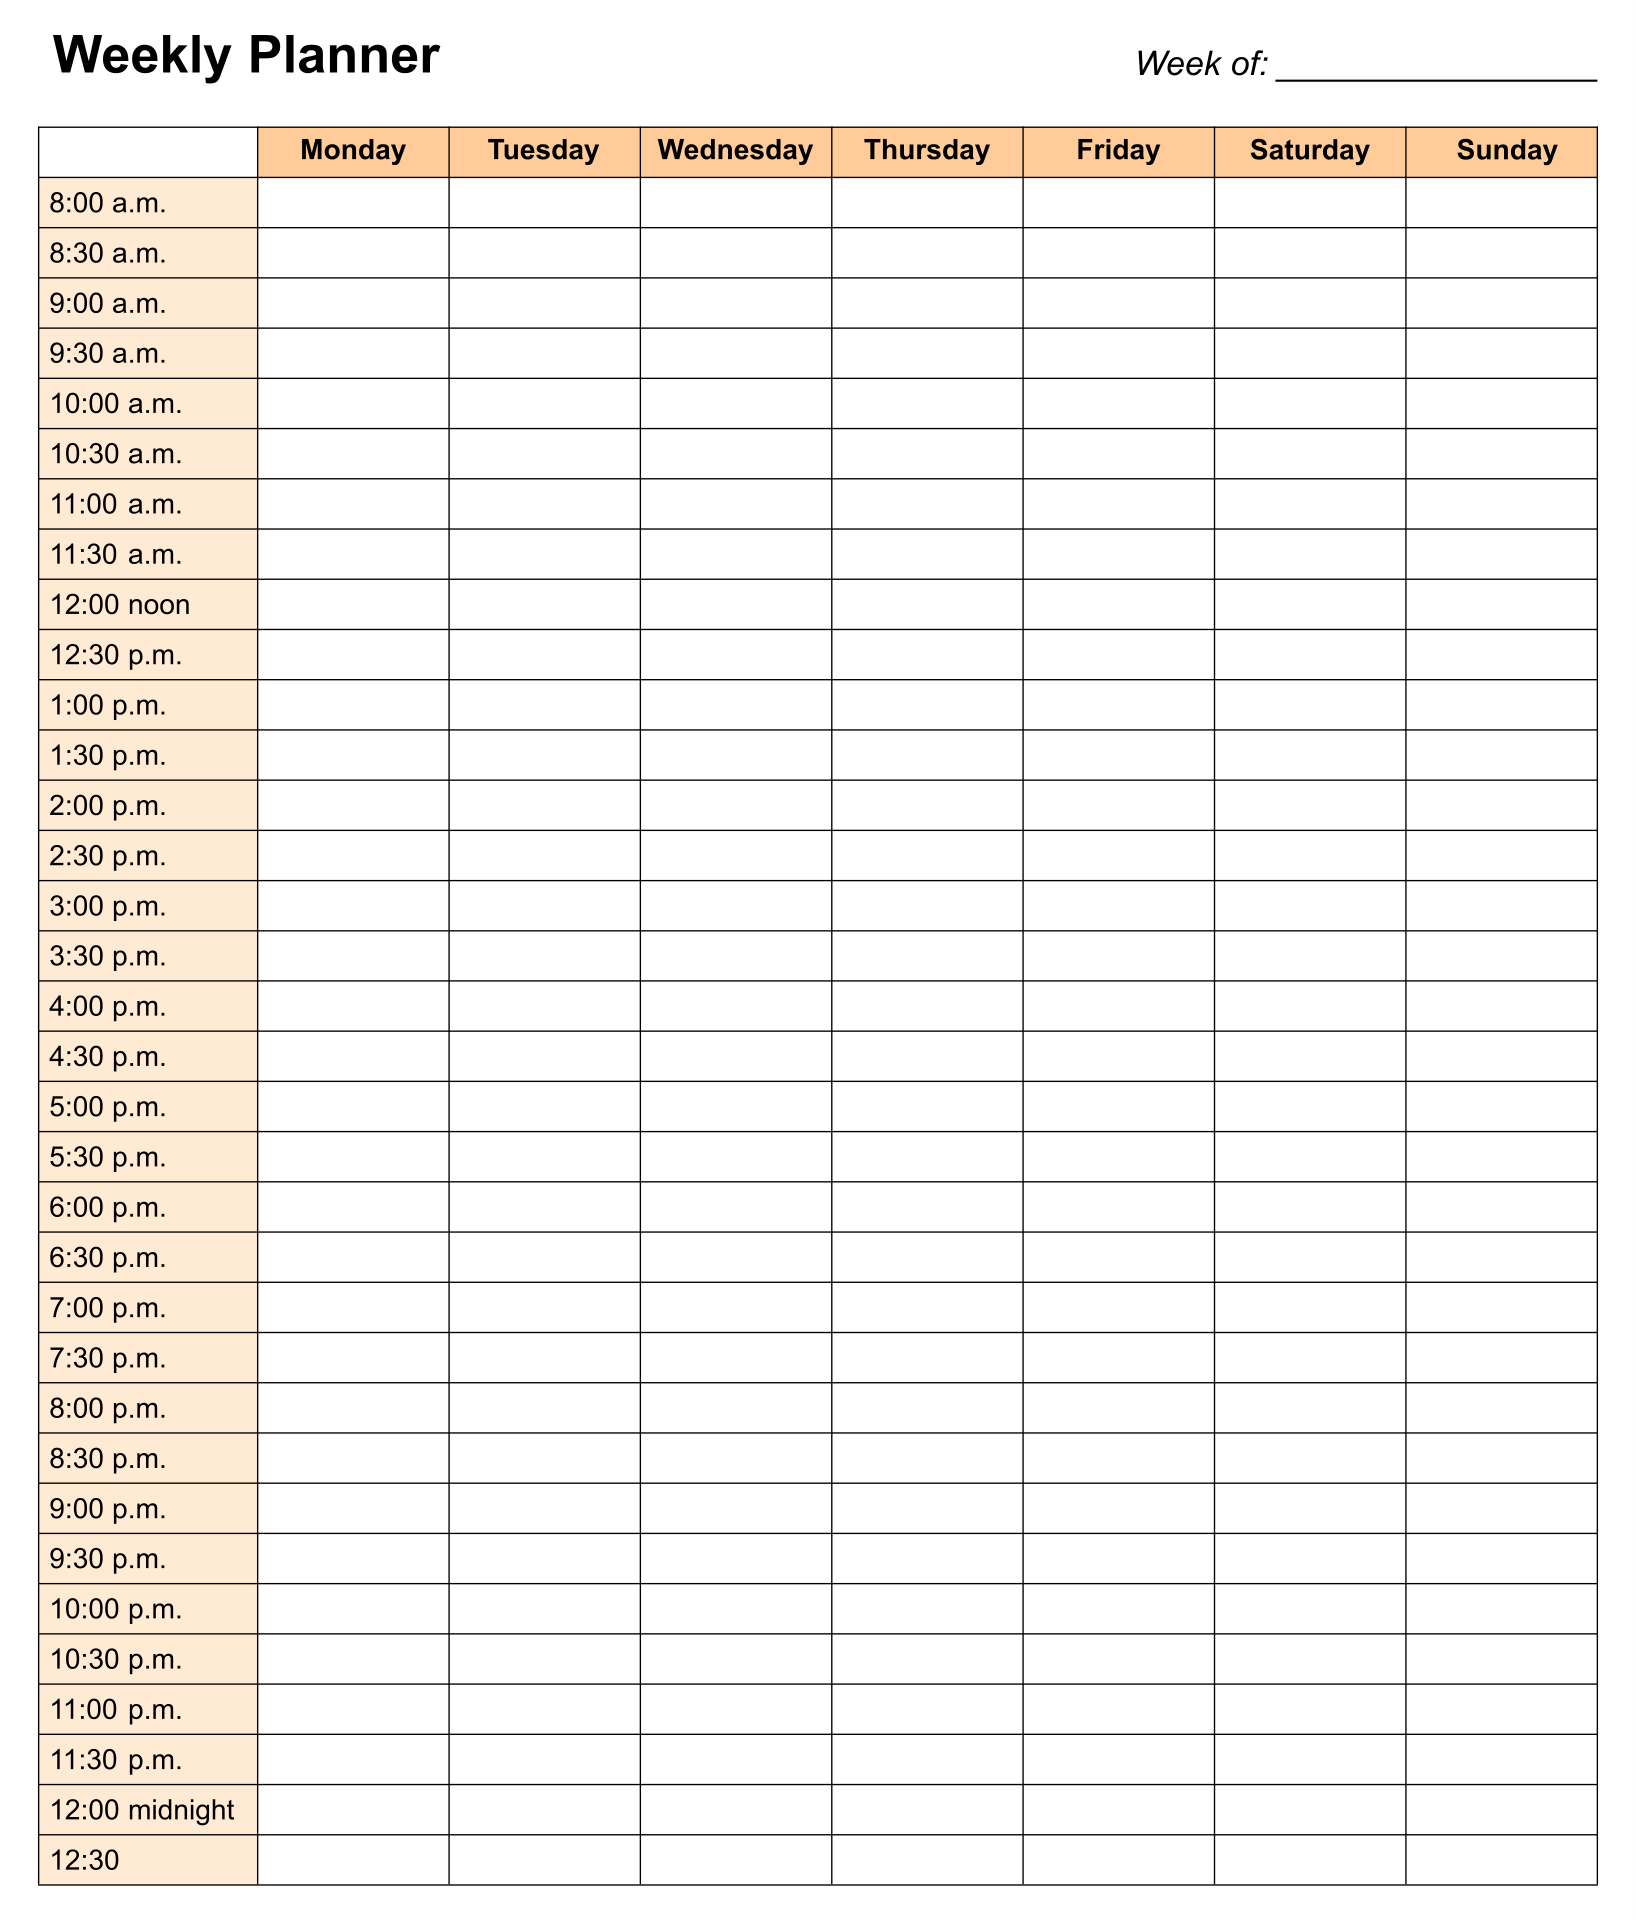 24 Hour Weekly Schedule Printable